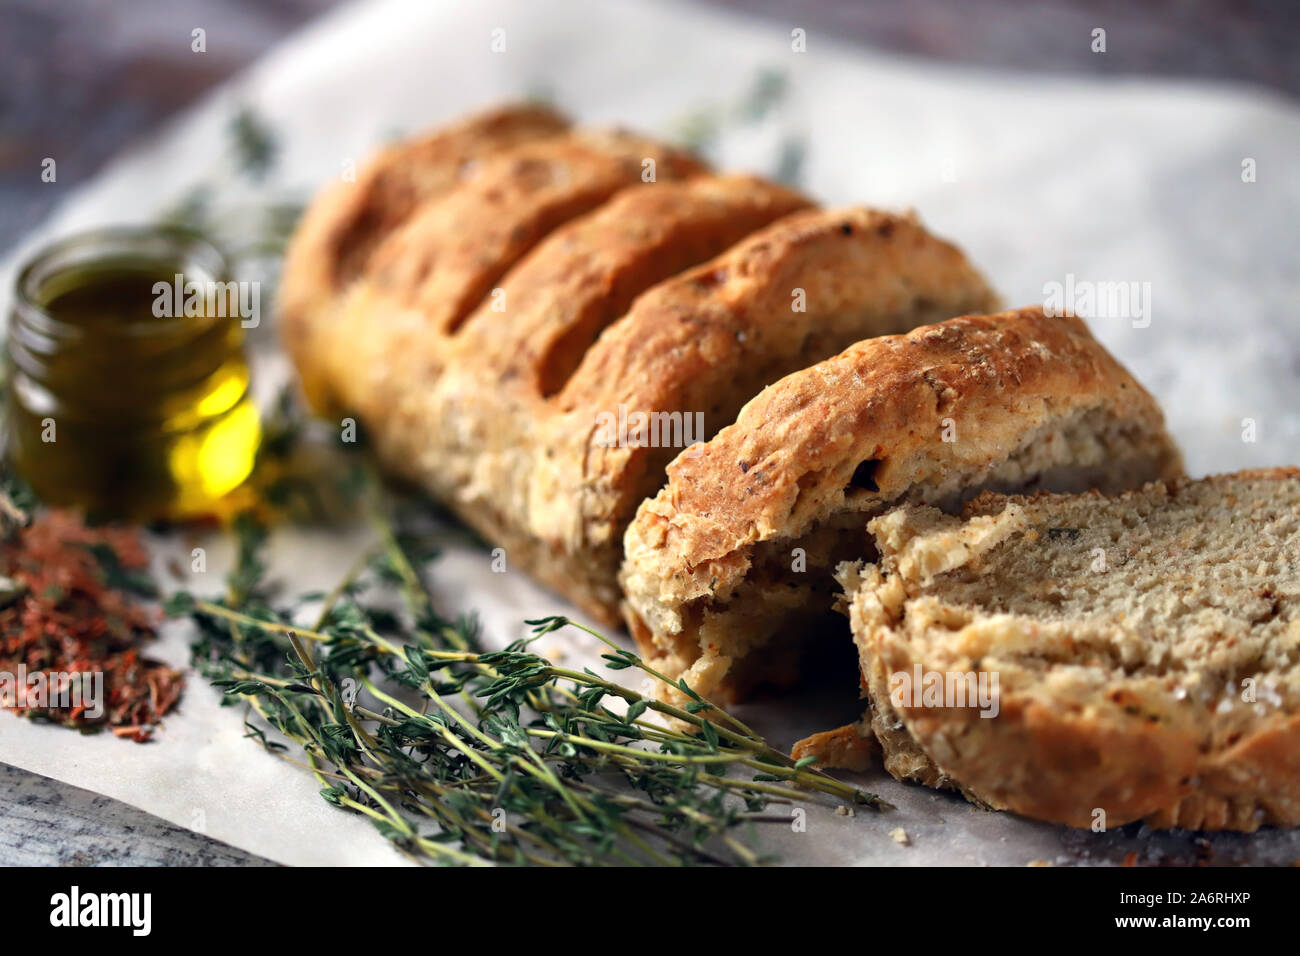 Leckeres frisches hausgemachtes Brot. Italienisches Brot mit Kräutern. Selektive konzentrieren. Makro. Stockfoto